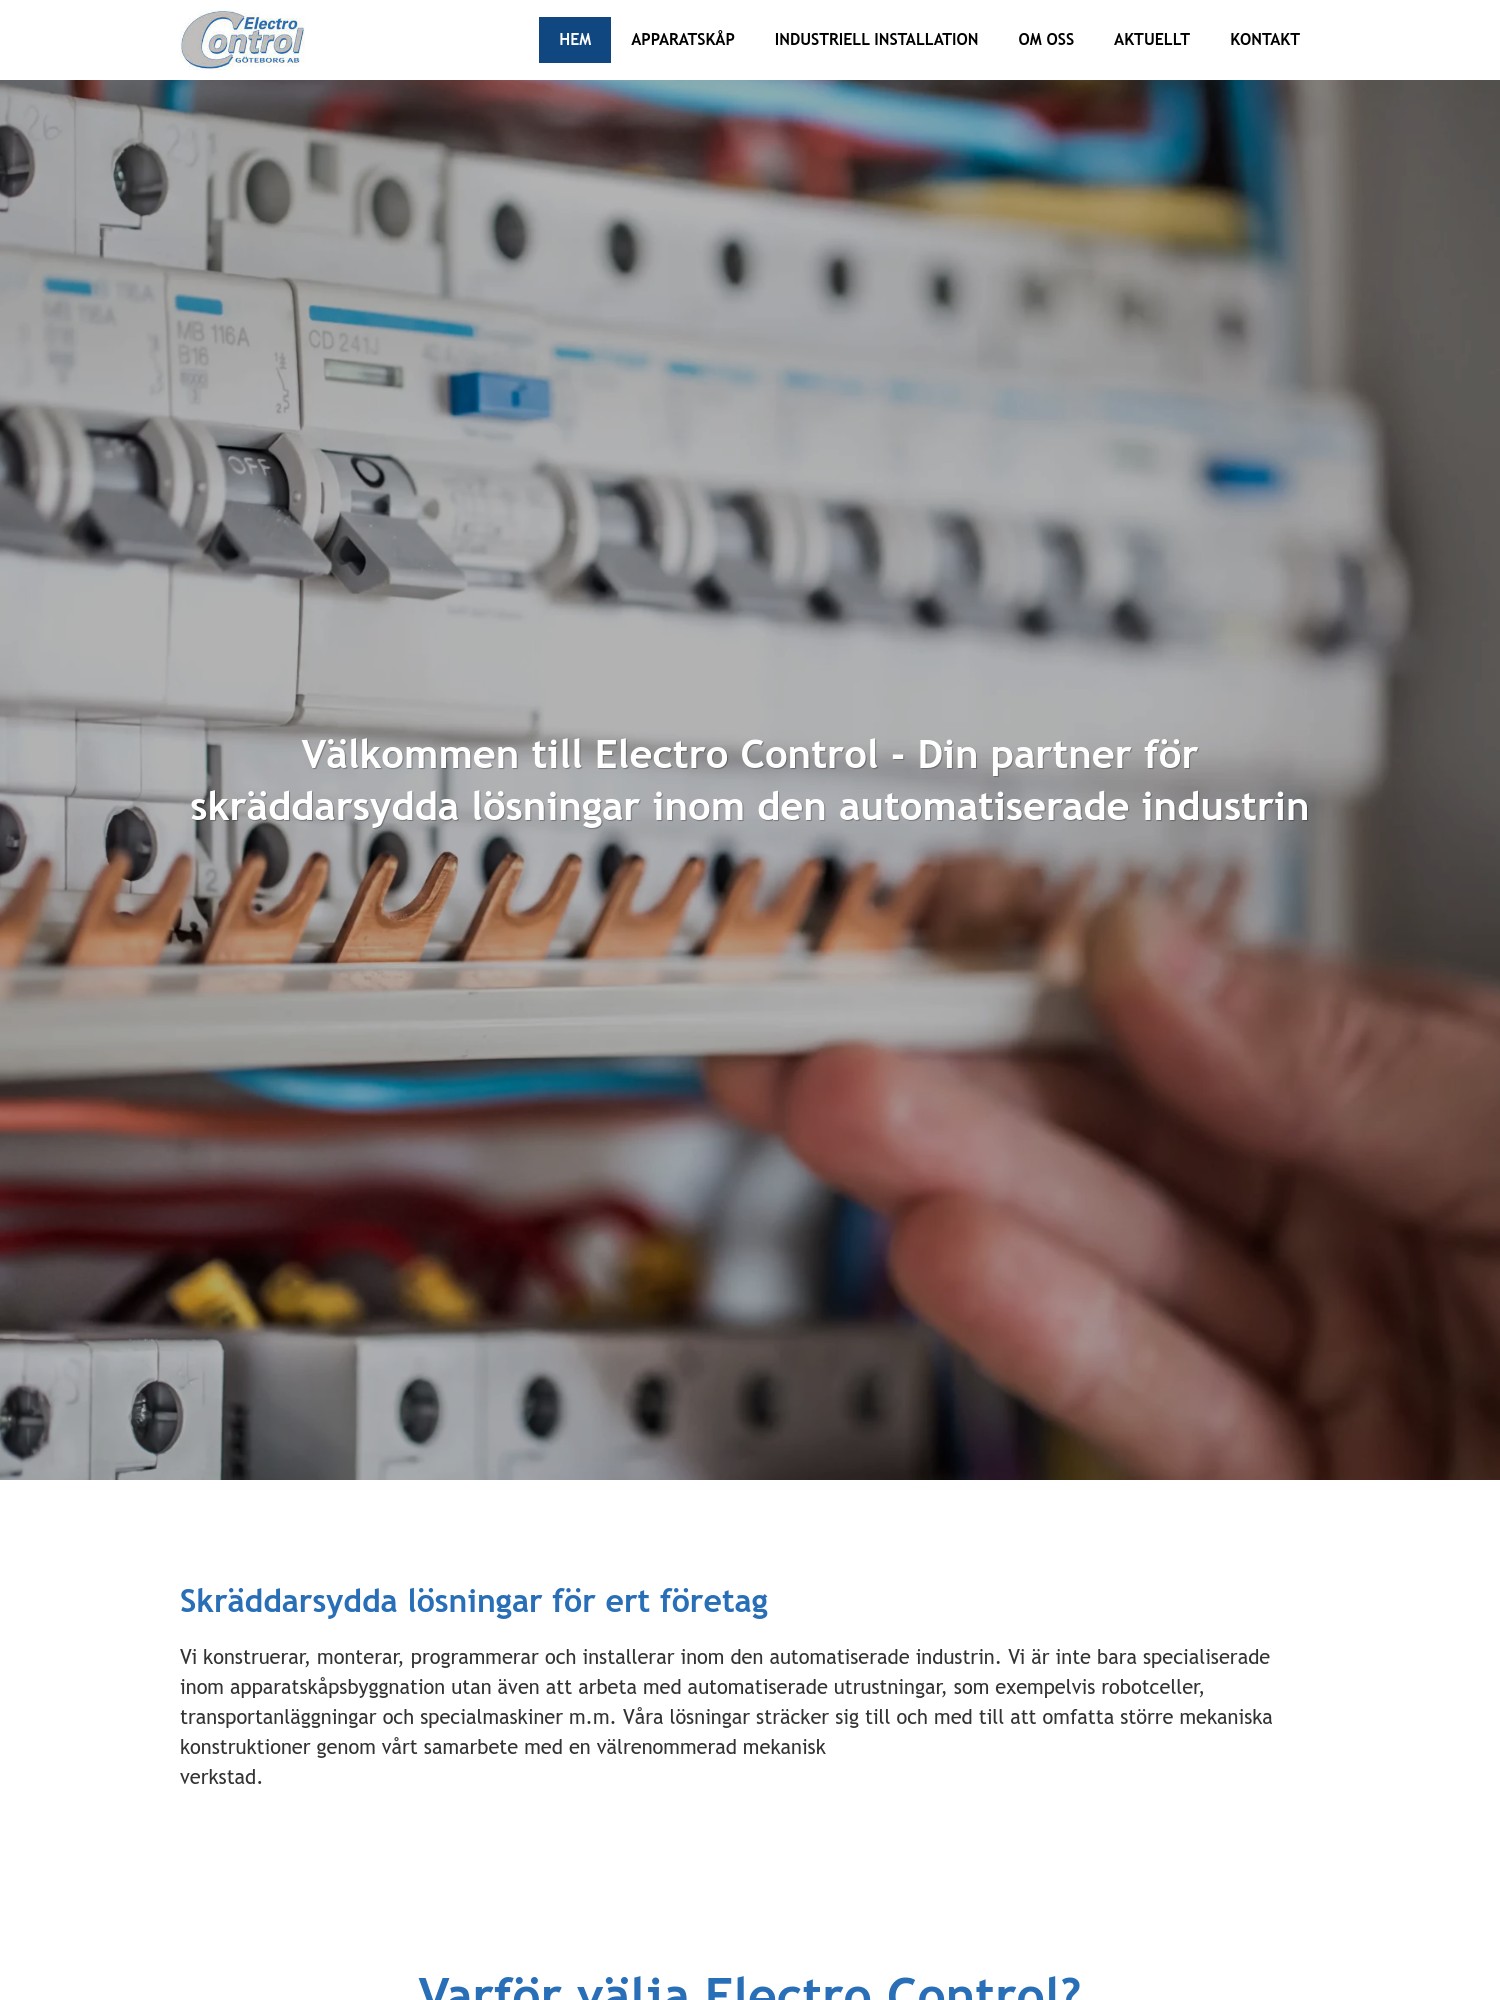 Electro Control – Din partner for skraddarsydda losningar inom den automatiserade industrin Interwebsite Webbyrå